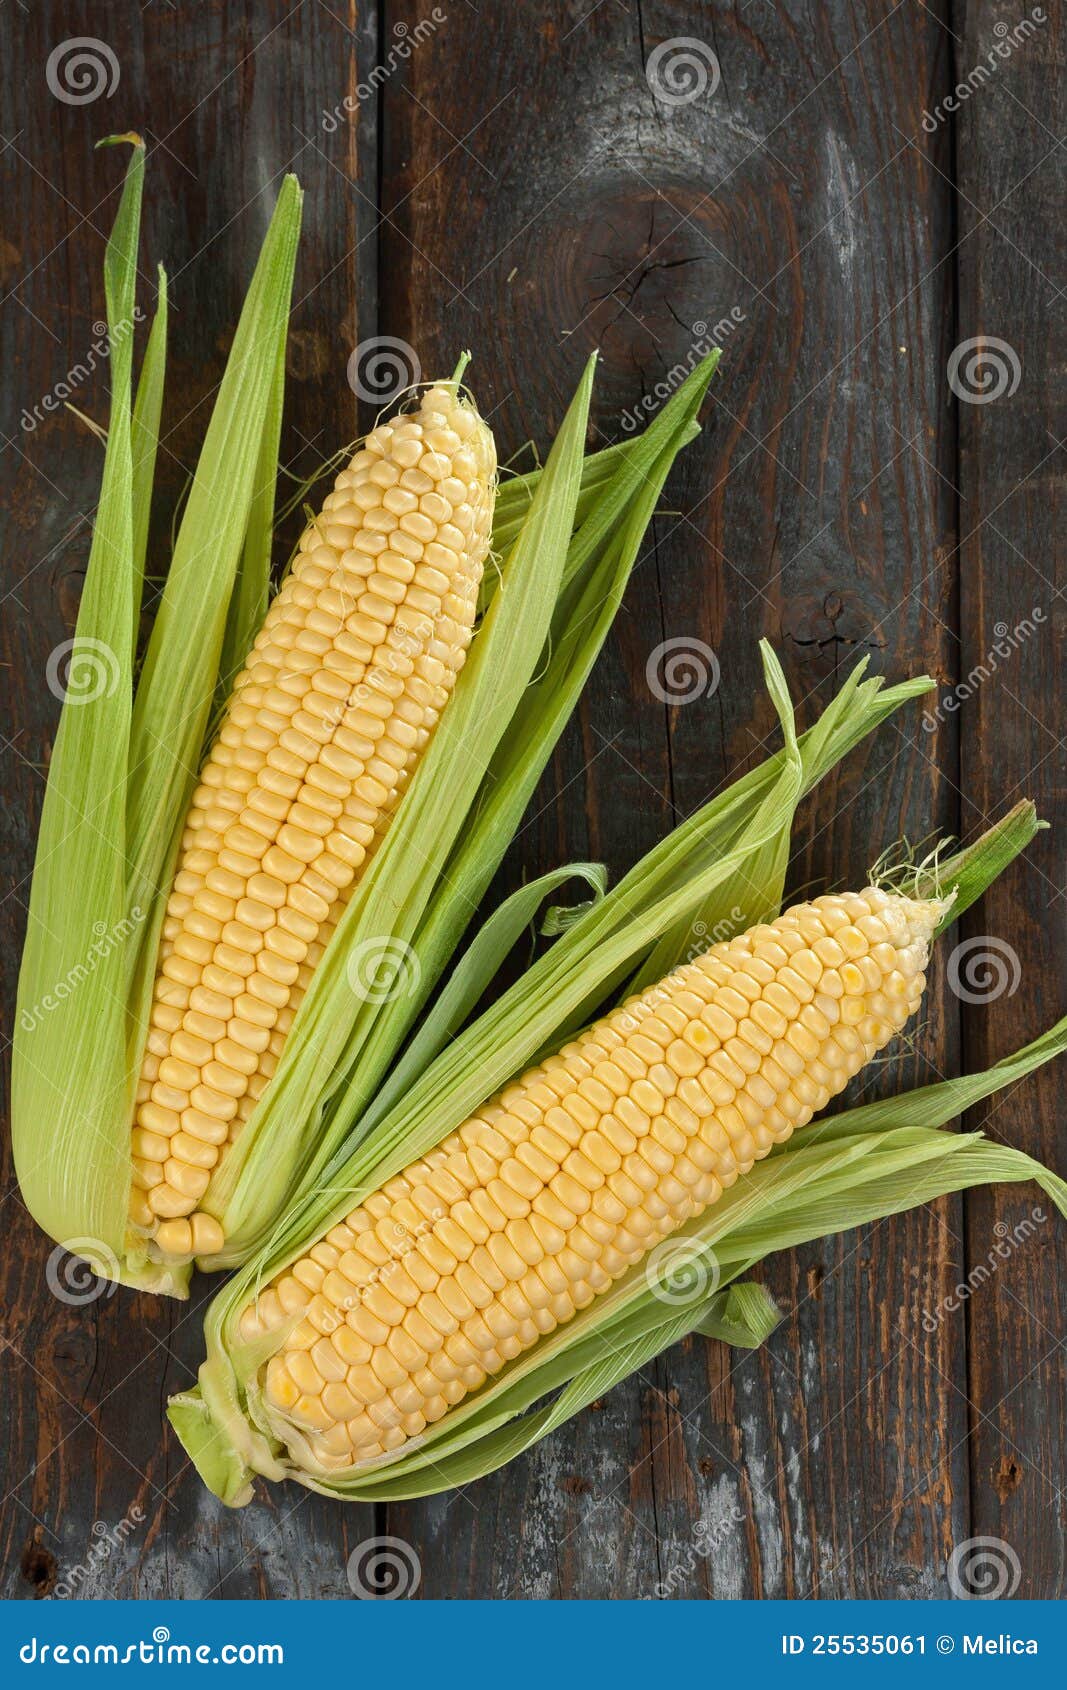 fresh corn cobs